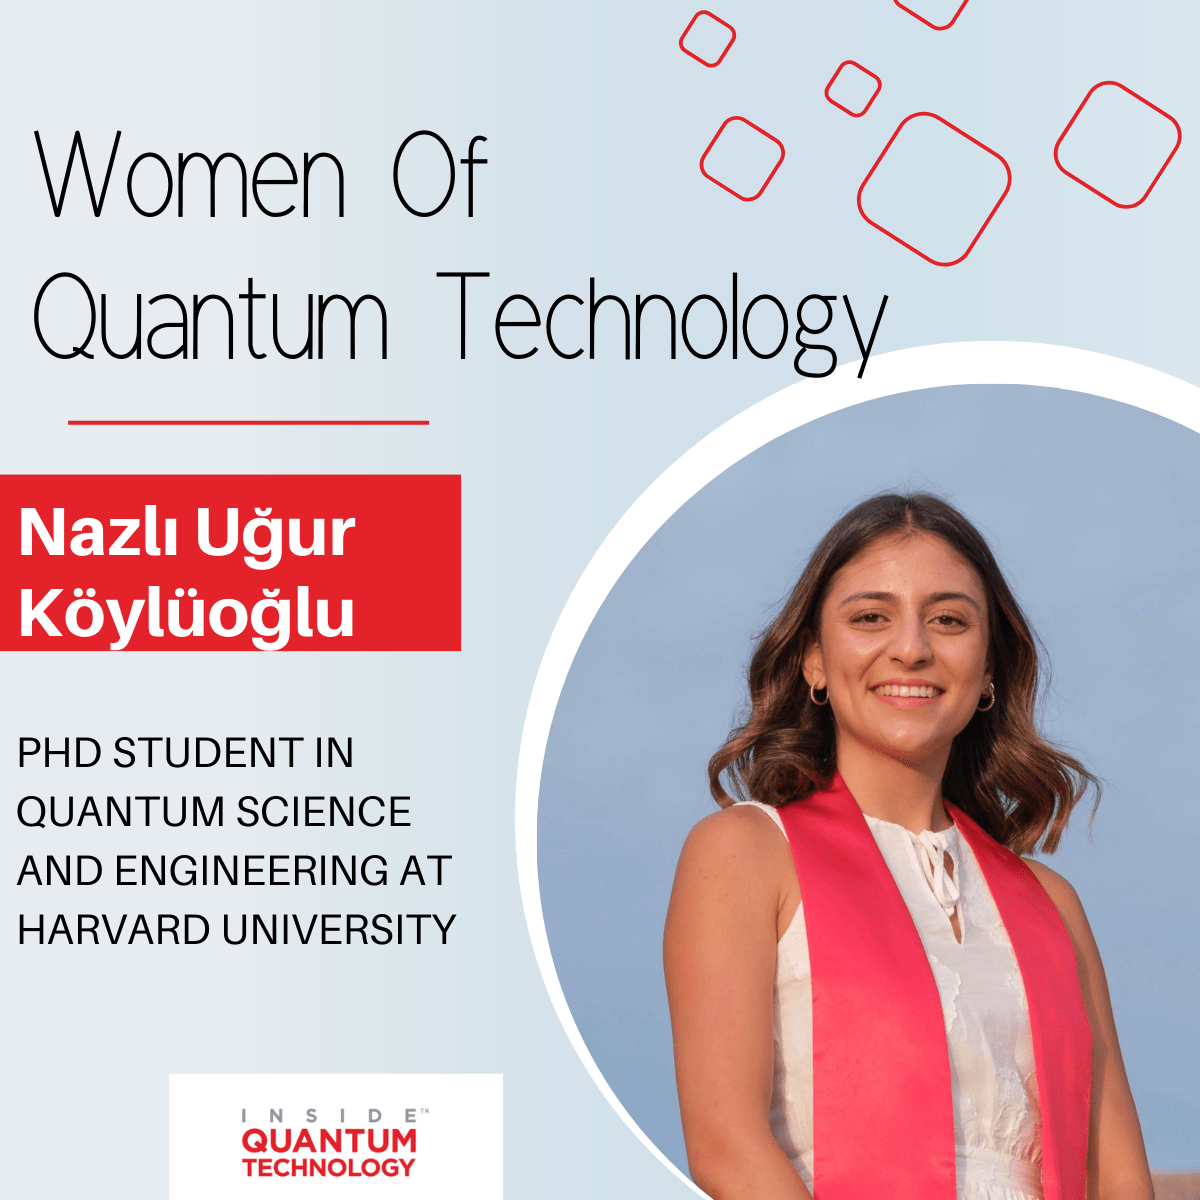 נשים של טכנולוגיה קוונטית: Nazlı Uğur Köylüoğlu מאוניברסיטת הרווארד - Inside Quantum Technology